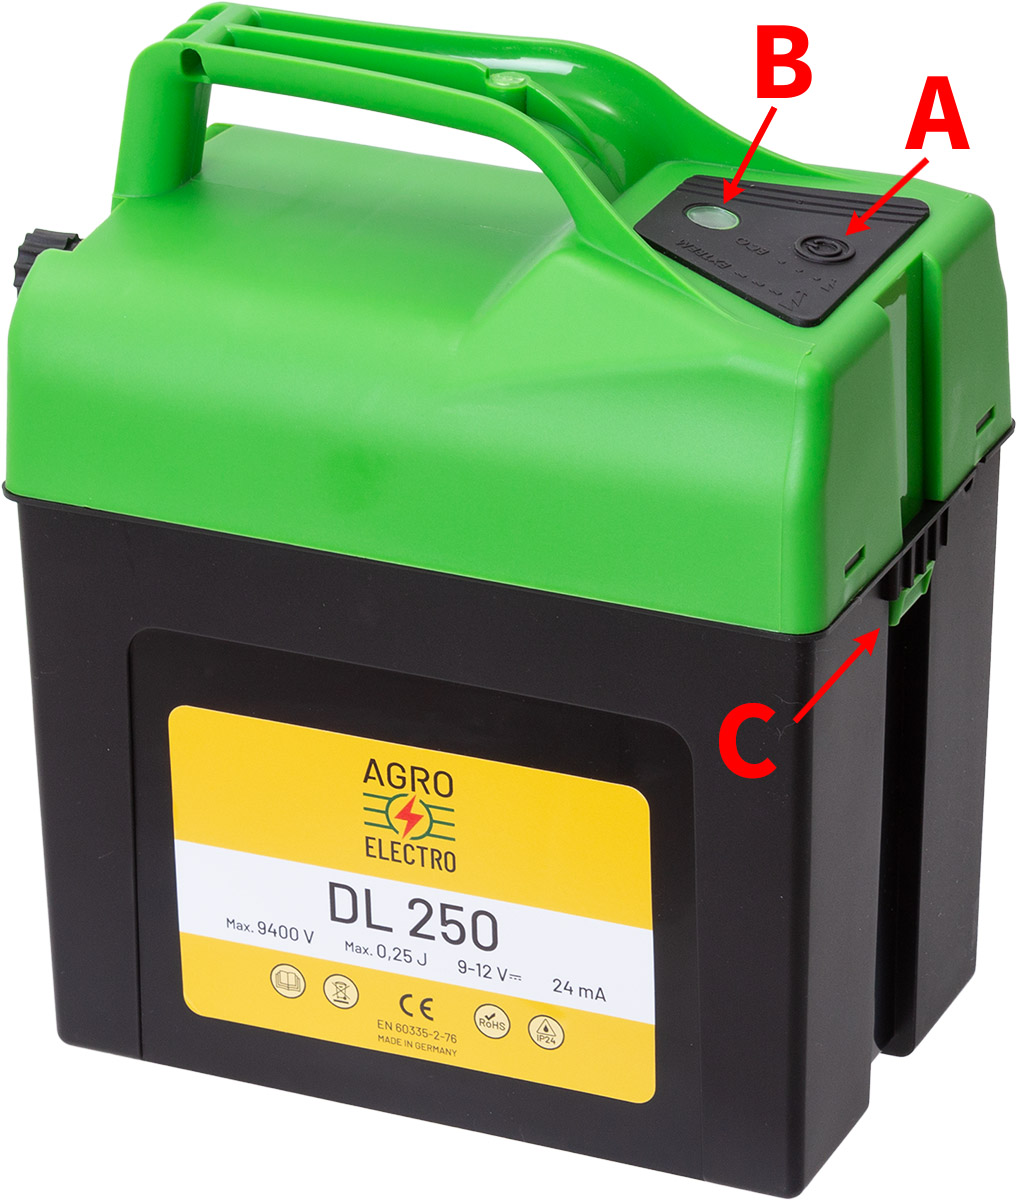 A DL 250 villanypásztor készülék használata